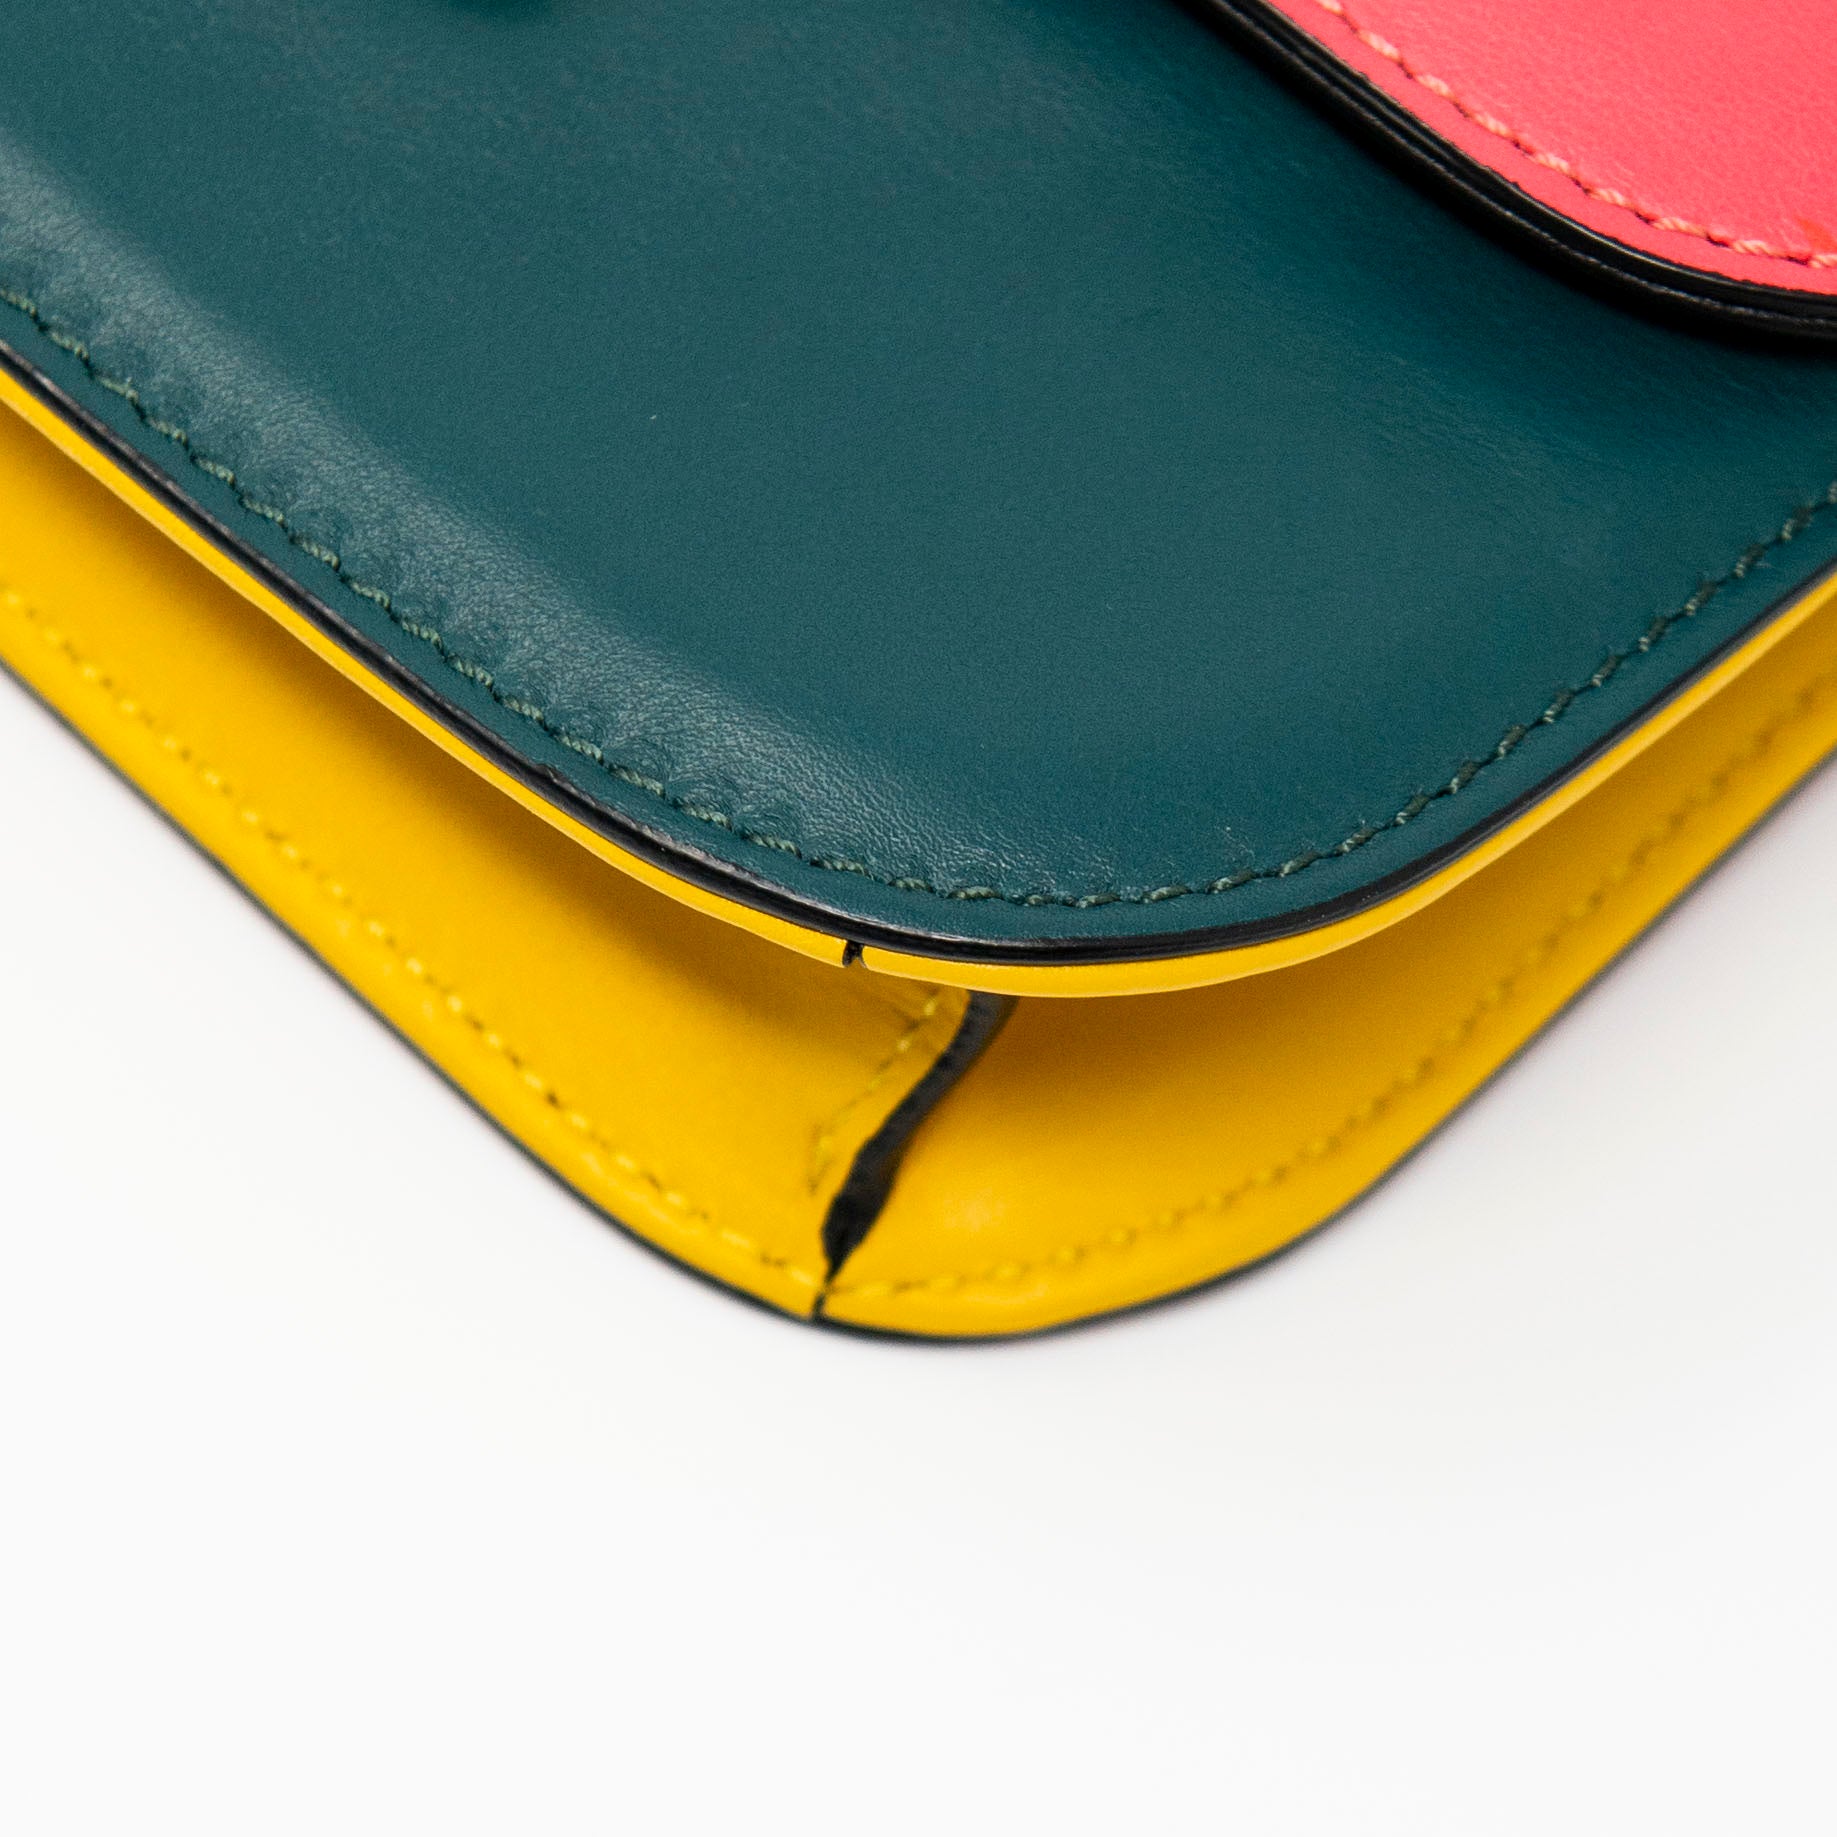 Valentino Tri-Colour Small Glam Lock Bag